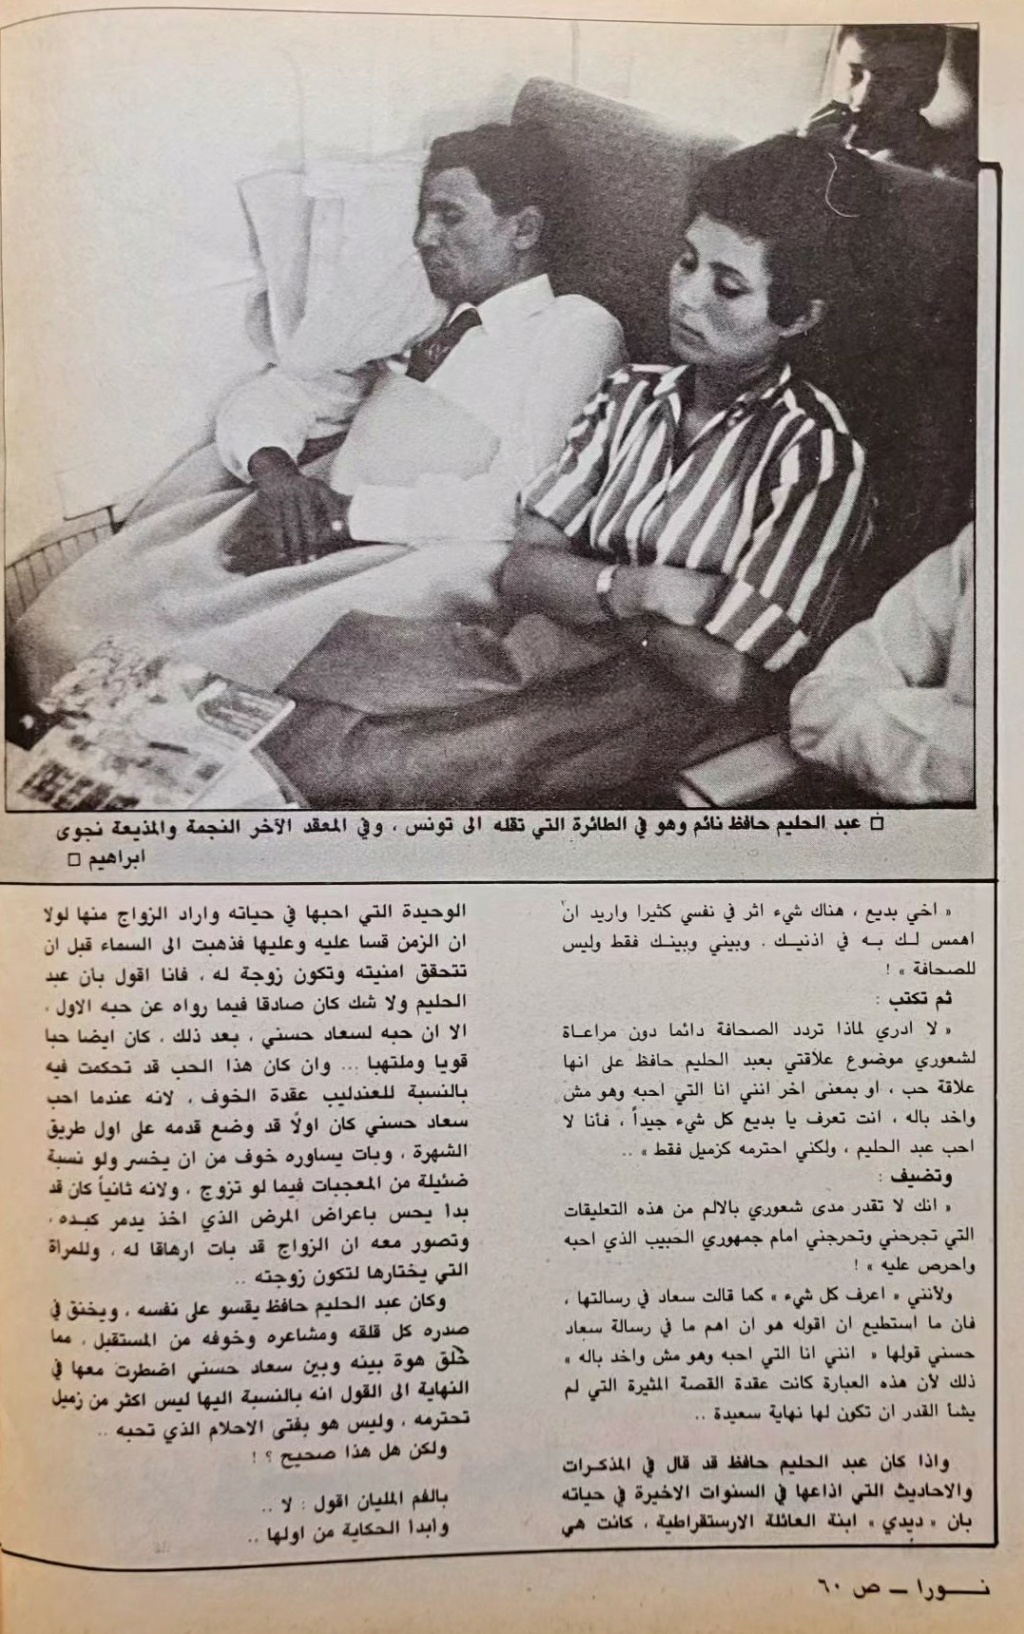 مقال صحفي : حكاية طويلة .. متى بدأت ؟ بين العندليب وسعاد حسني 1983 م 356